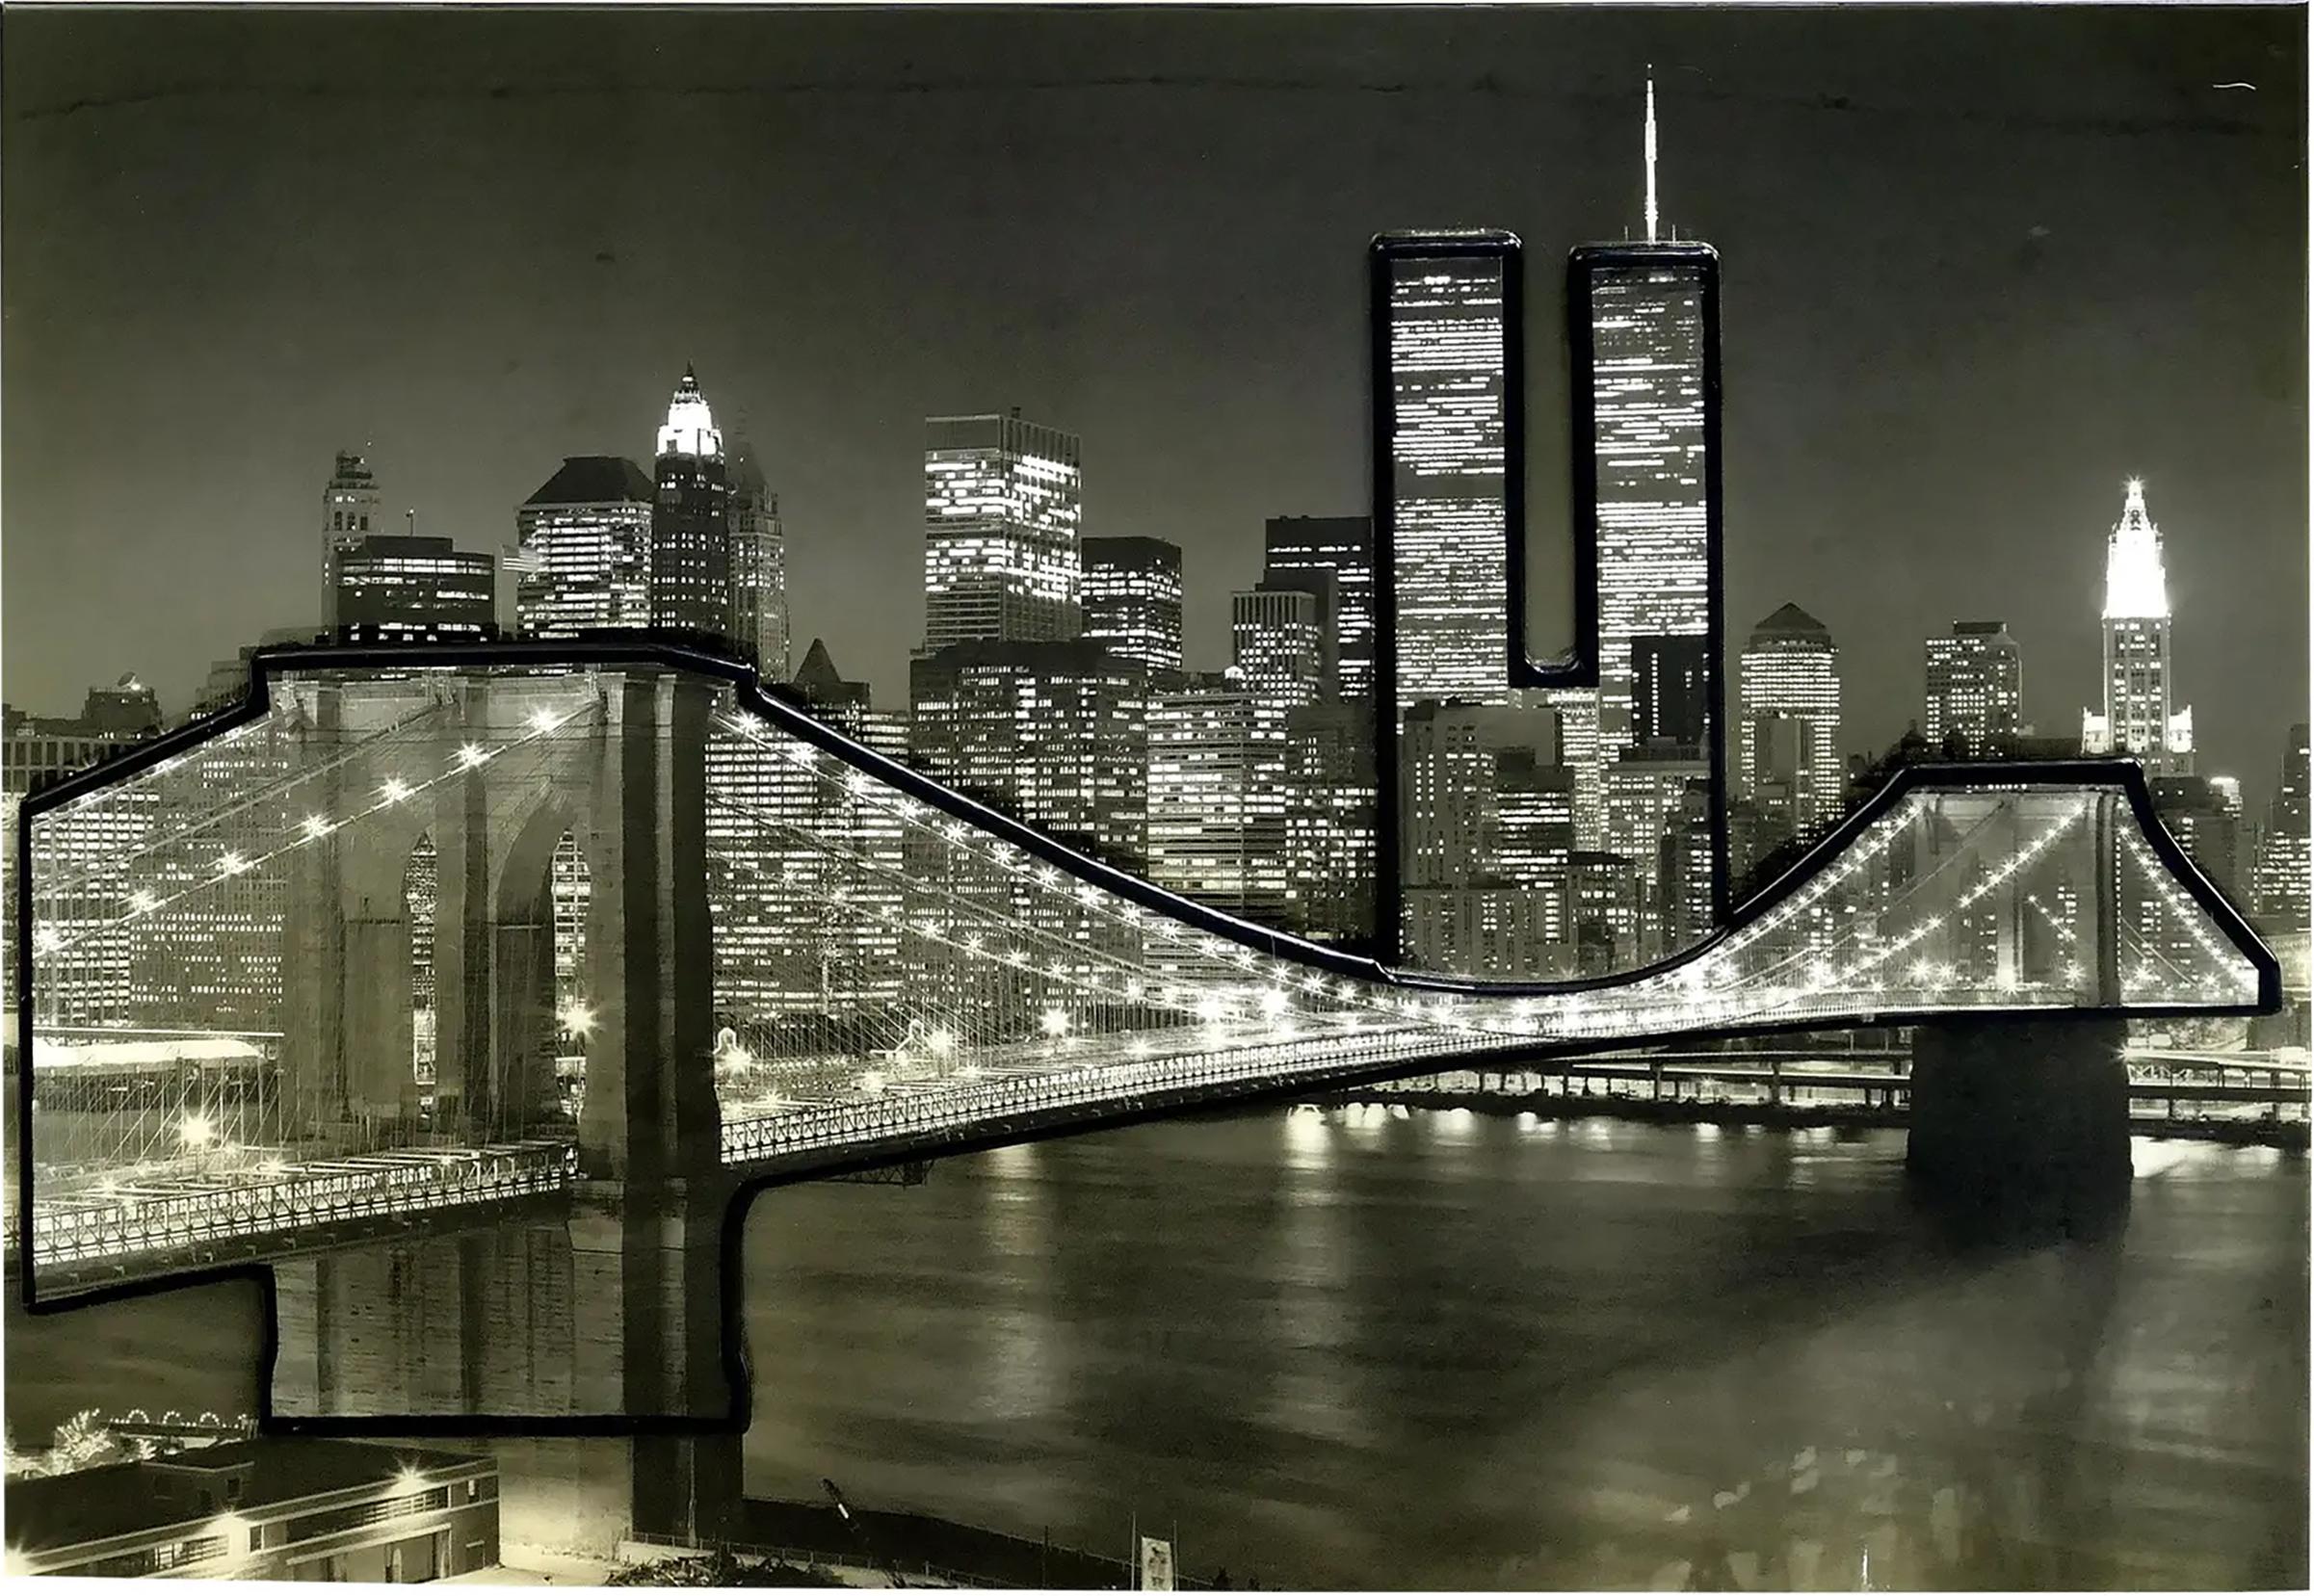 




Photographie encadrée en trois dimensions de l'horizon de la ville de New York avec les tours jumelles 

Est proposée à la vente une photographie encadrée en noir et blanc de la ville de New York avec le pont de Brooklyn et une vue des tours